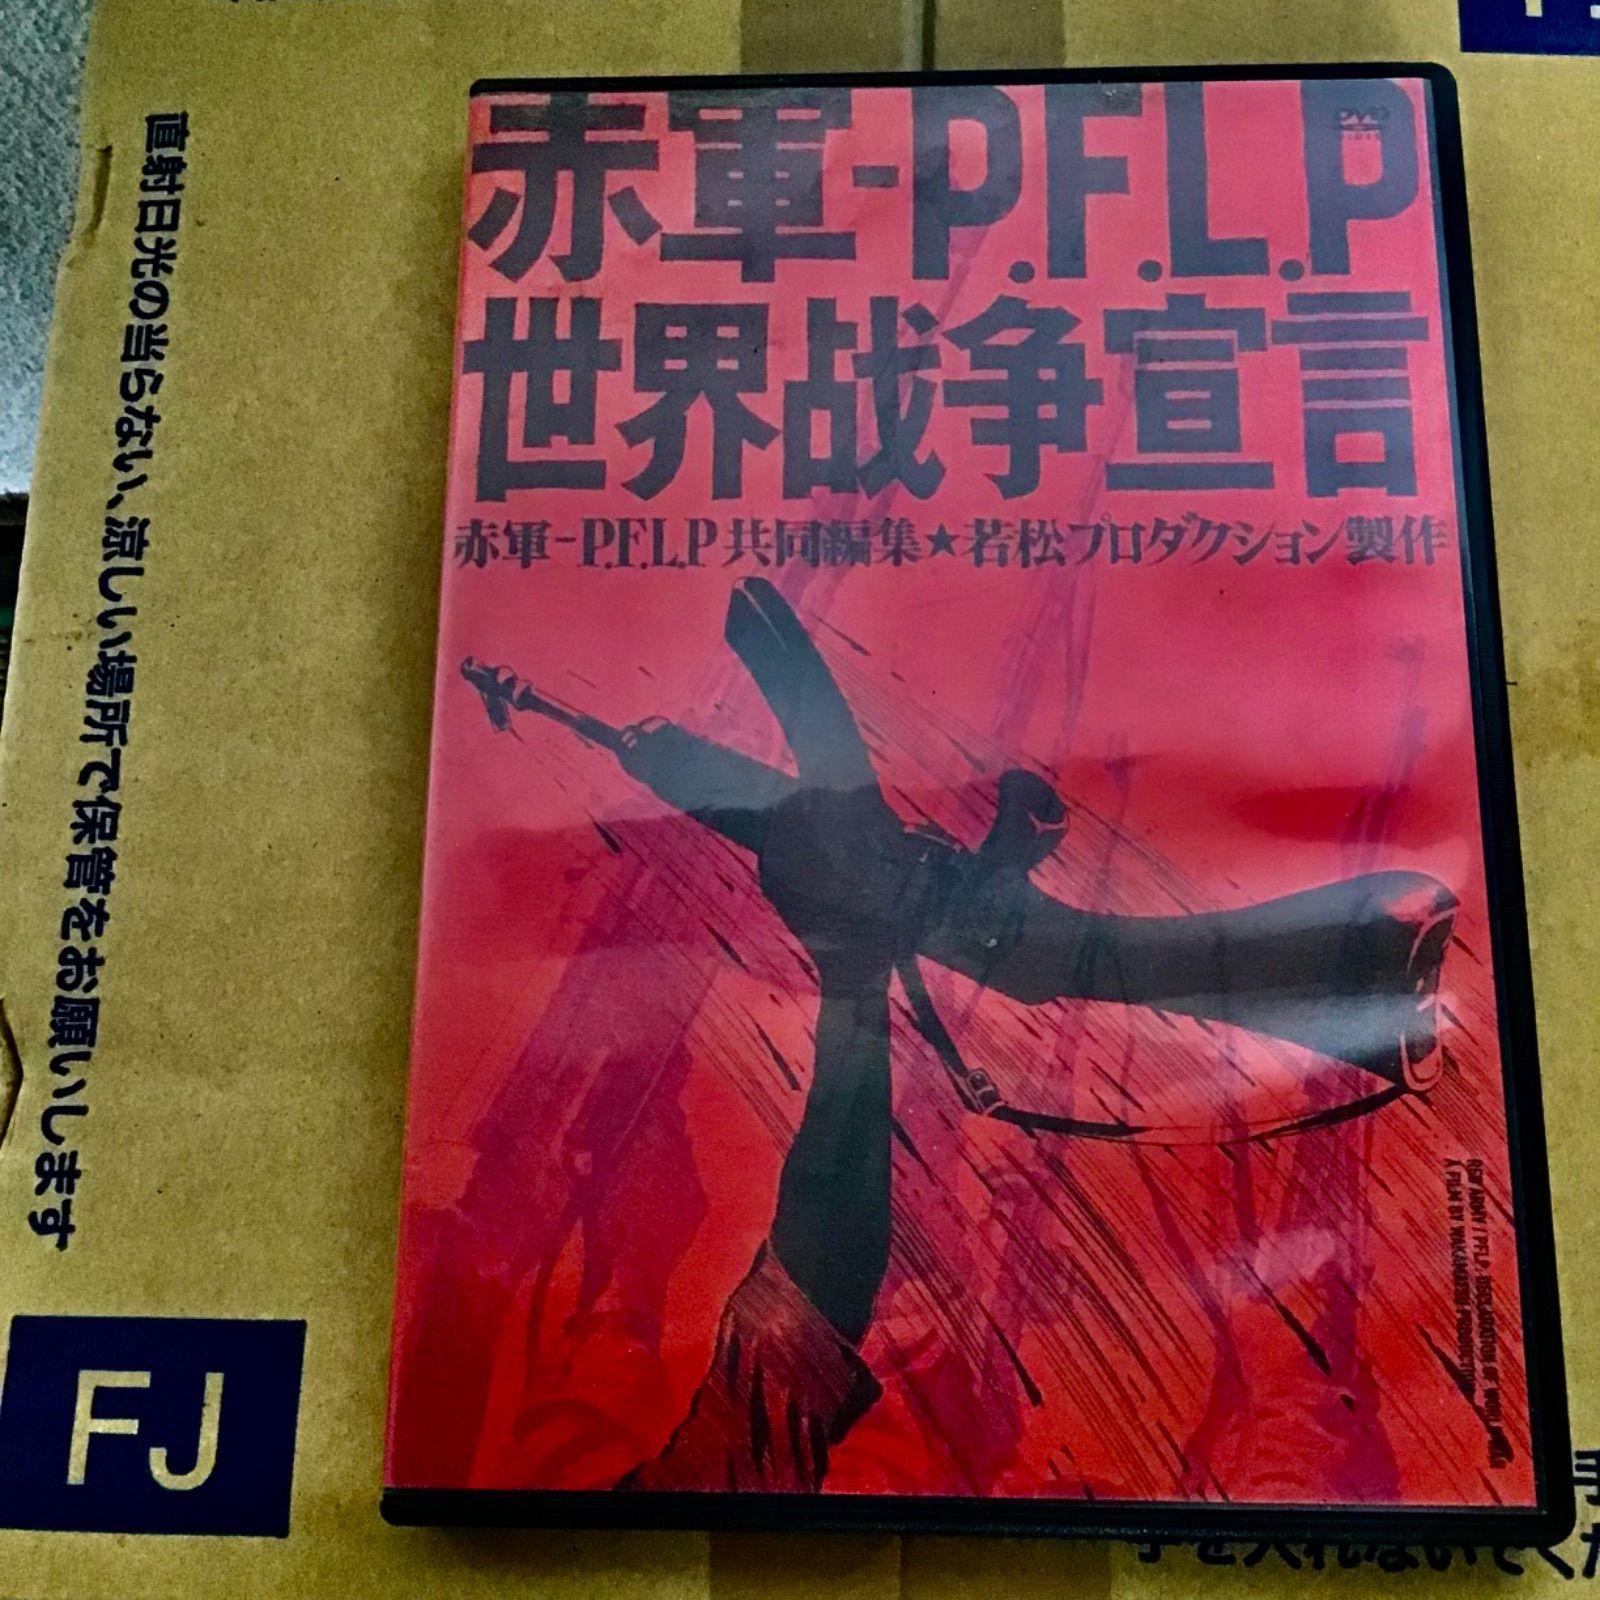 赤軍-P.F.L.P 世界戦争宣言('71若松プロダクション) - 日本映画